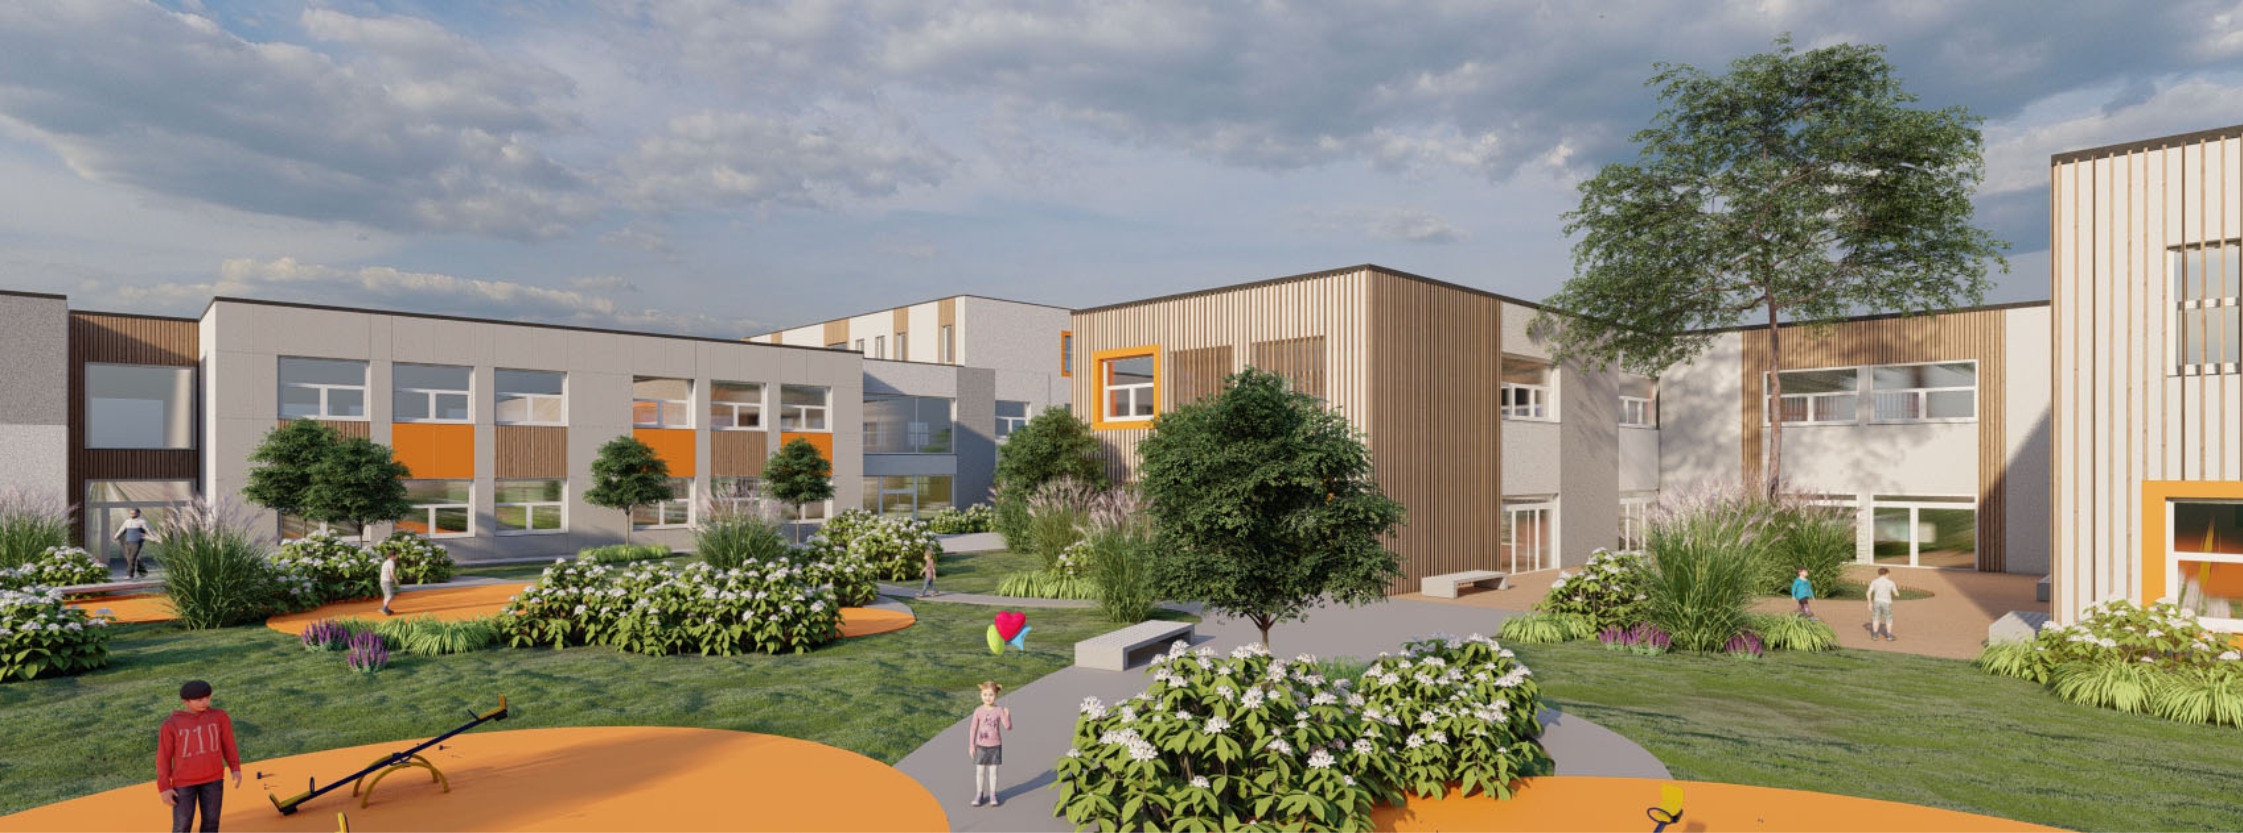 Zdjęcie przedstawia wizualizację szkoły i przedszkola,która będzie budowana w mieście Ostrów Mazowiecka 